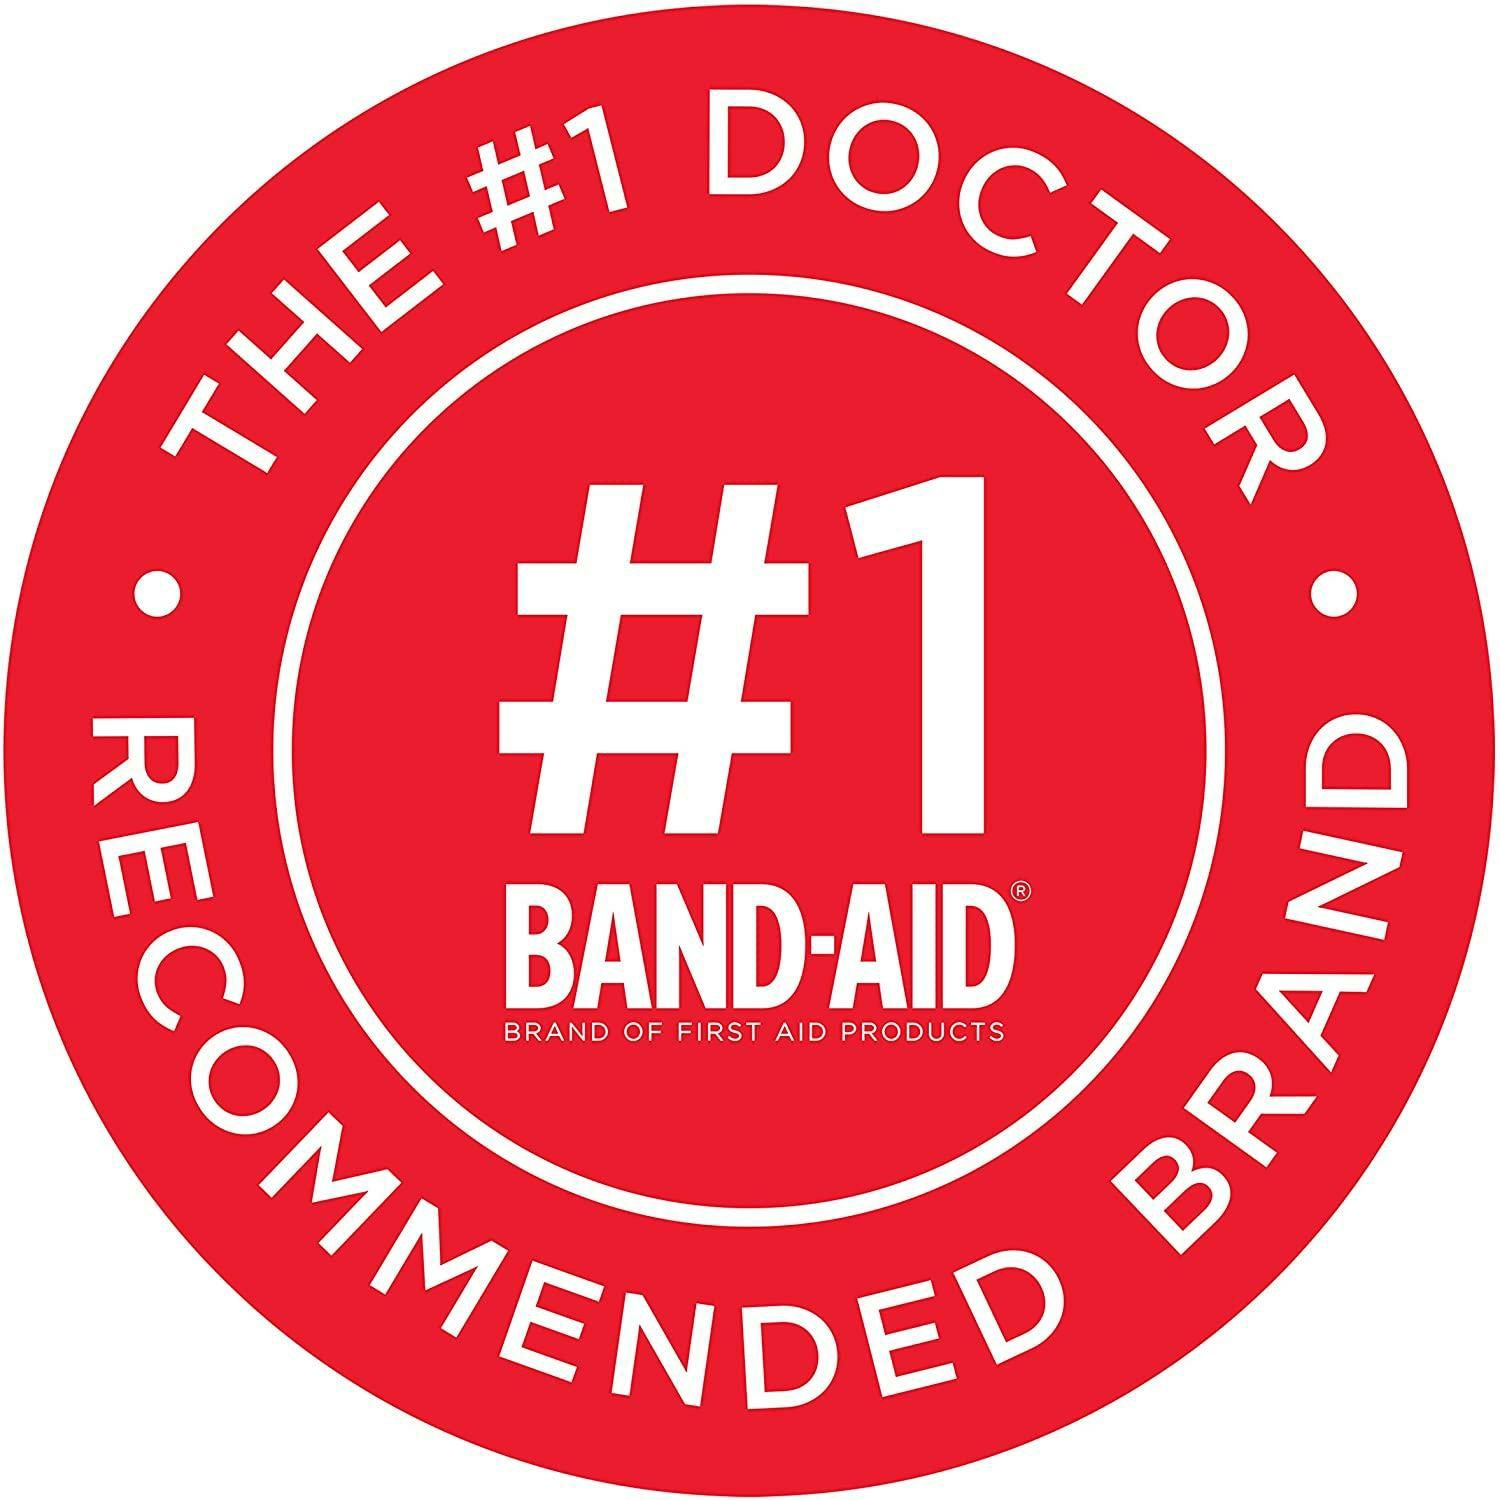 Band-Aid Brand Пластыри, лейкопластырь для мелких порезов и царапин